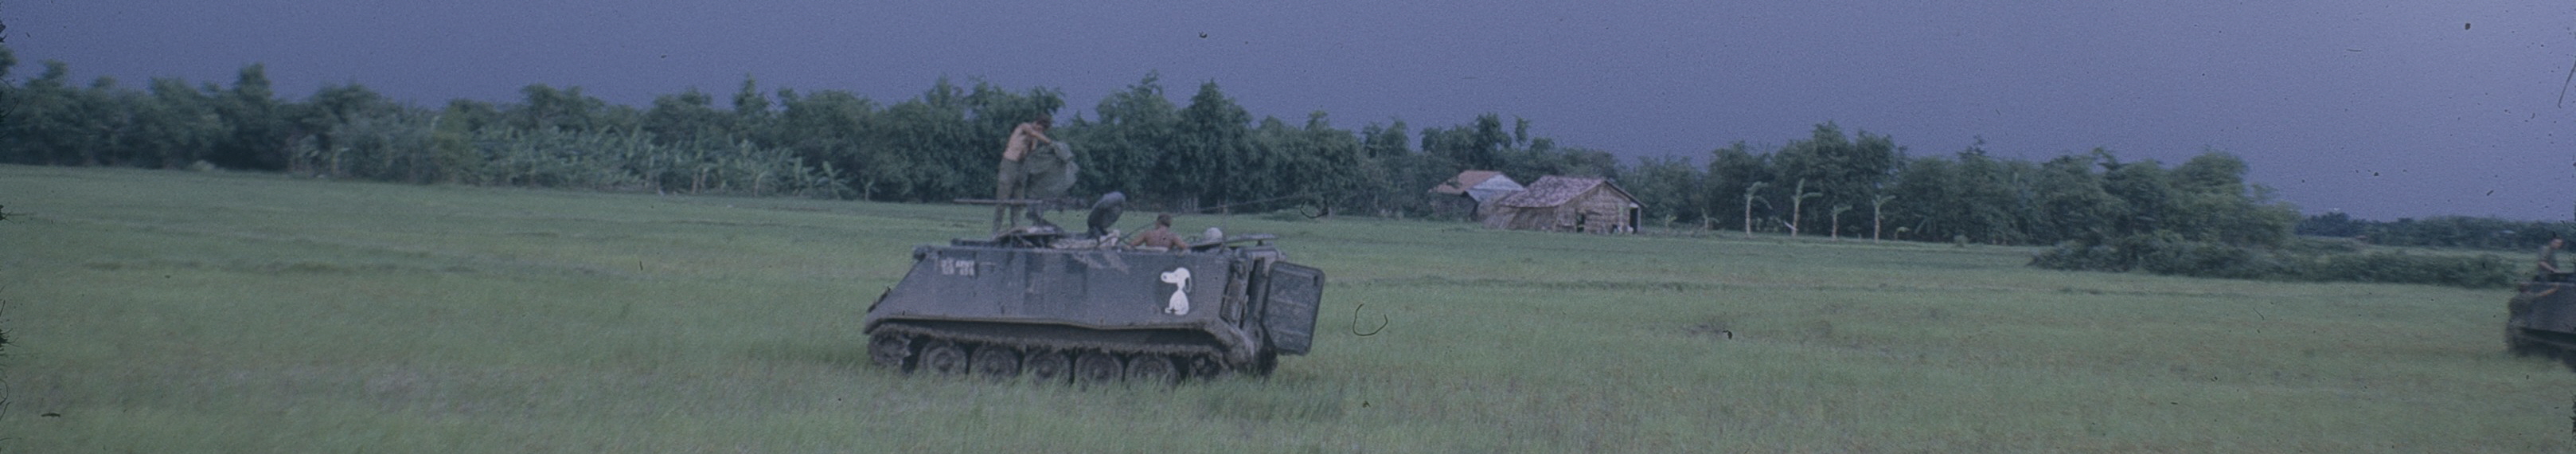 M113 Snoopy Field